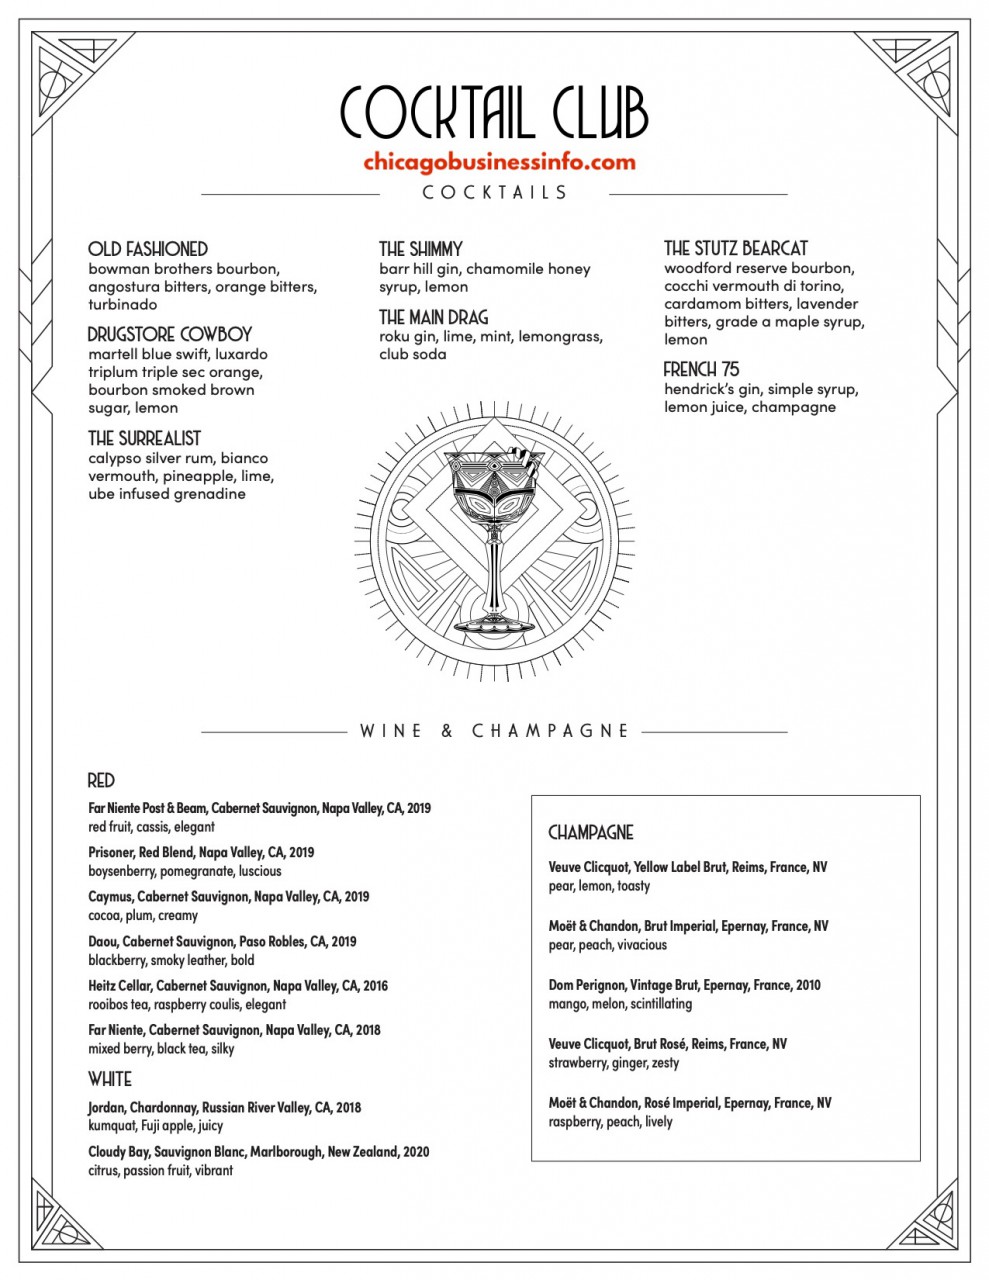 Underground cocktail club chicago menu